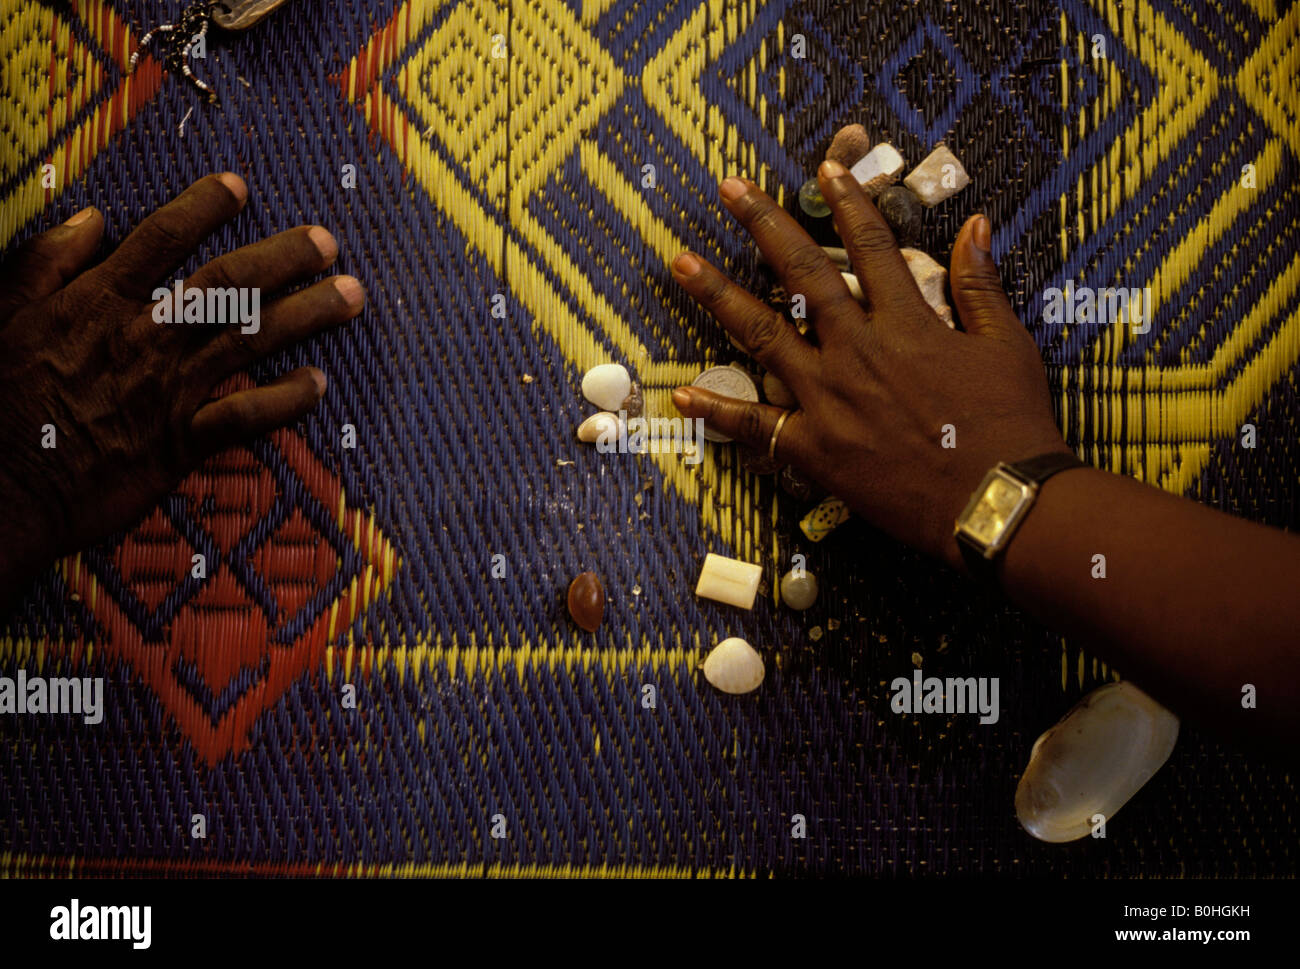 Un prêtre Voodoo lire les pierres lors d'une consultation avec un client, Lomé, Togo. Banque D'Images